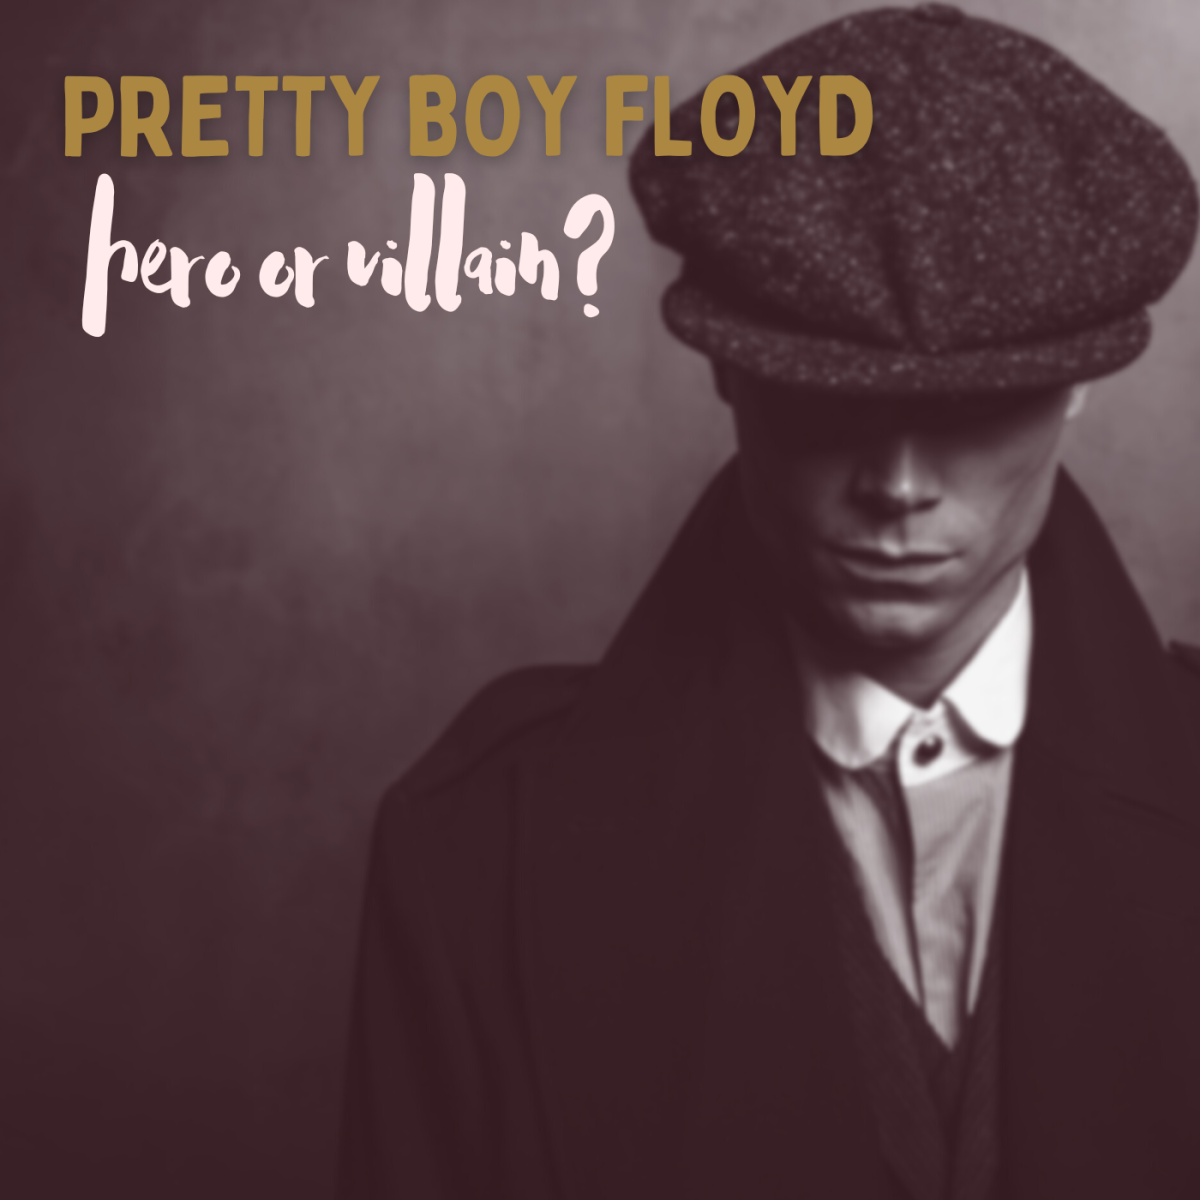 Pretty Boy Floyd: Robin Hood or Notorious Killer?